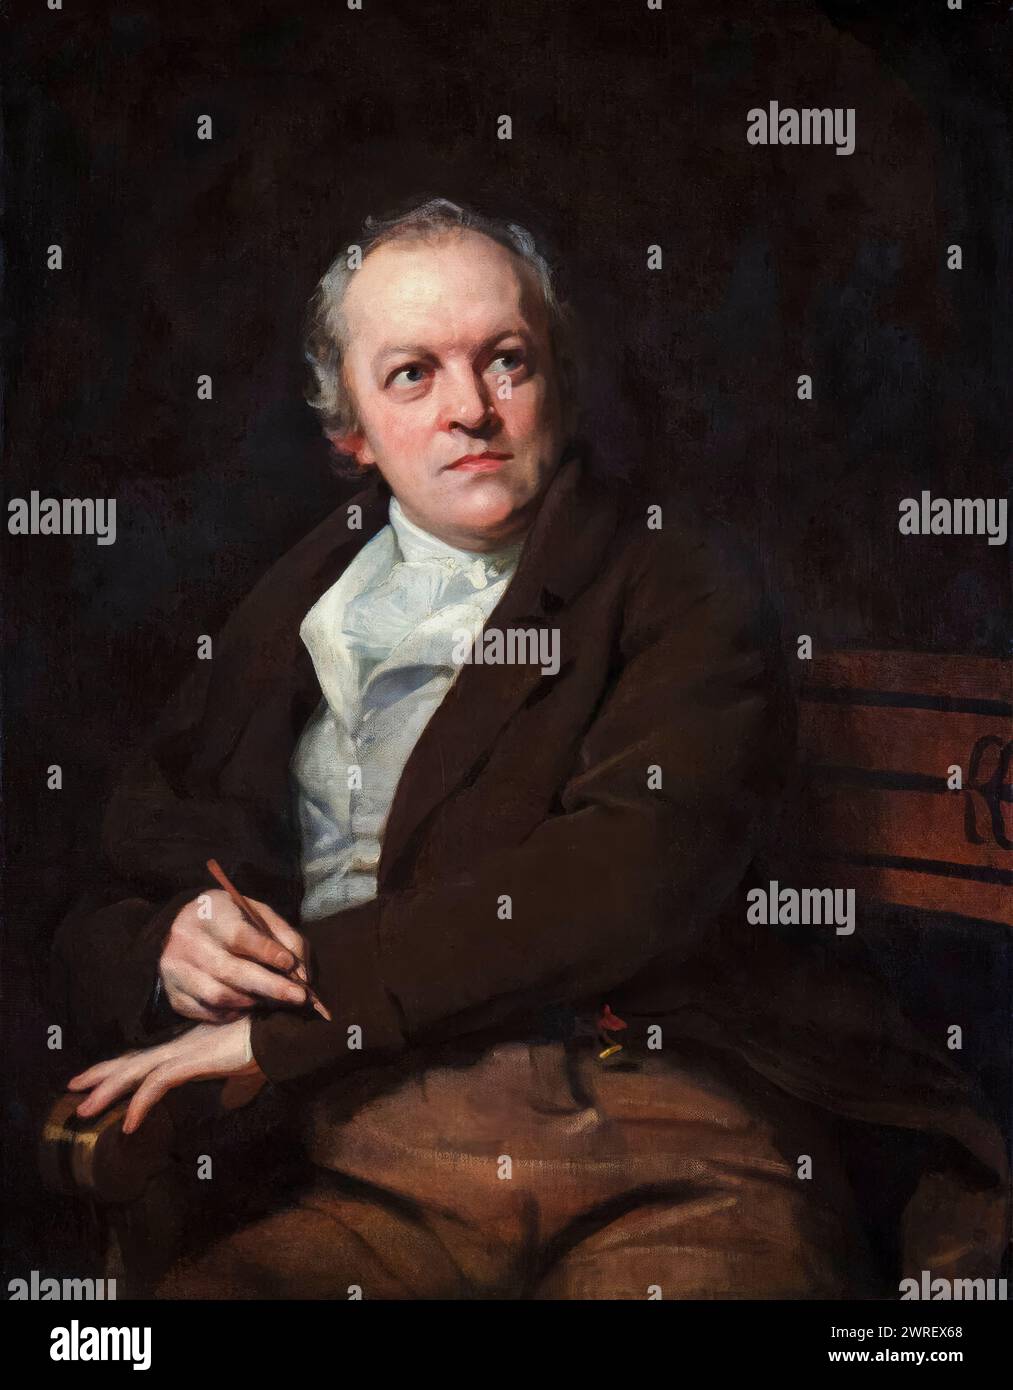 William Blake (1757-1827), poeta, pittore e incisore inglese, ritratto a olio su tela di Thomas Phillips, 1807 Foto Stock